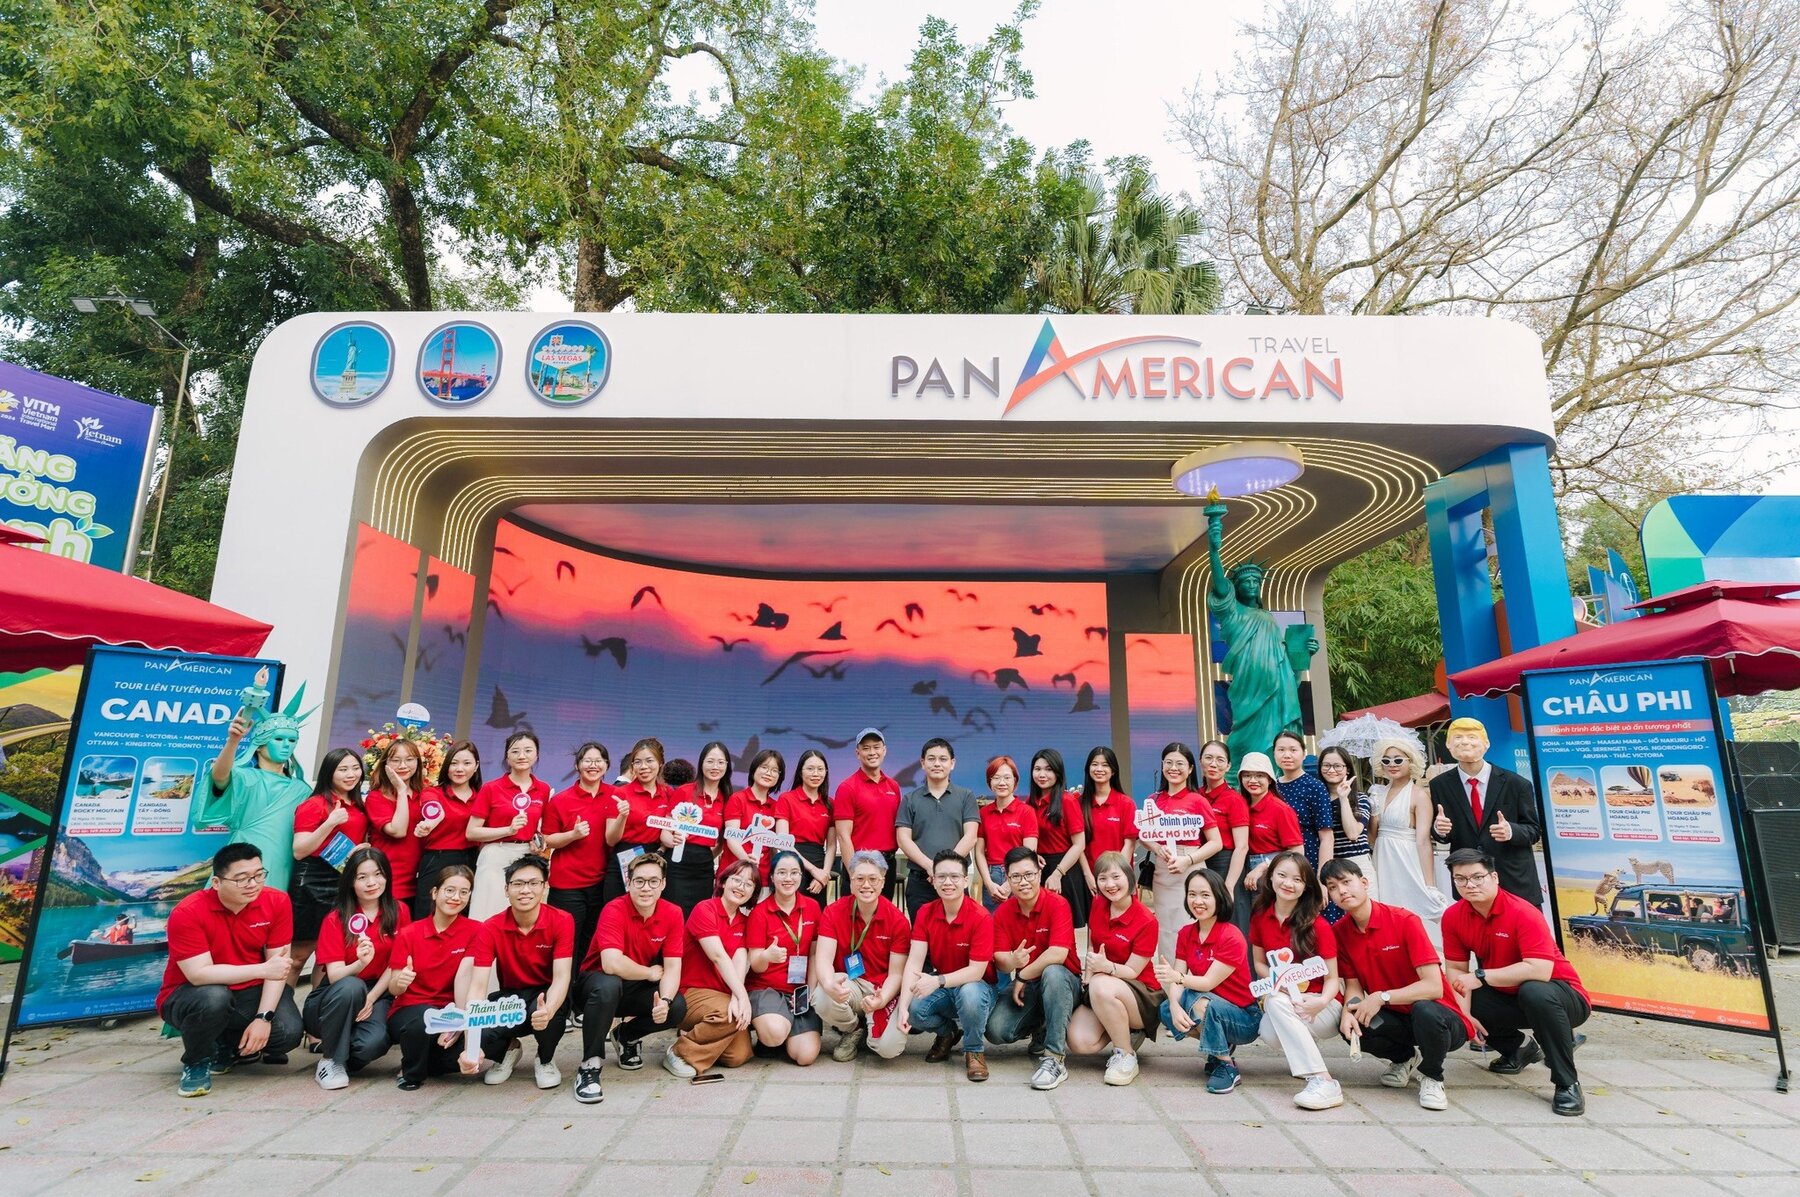 Đội ngũ của Pan American Travel